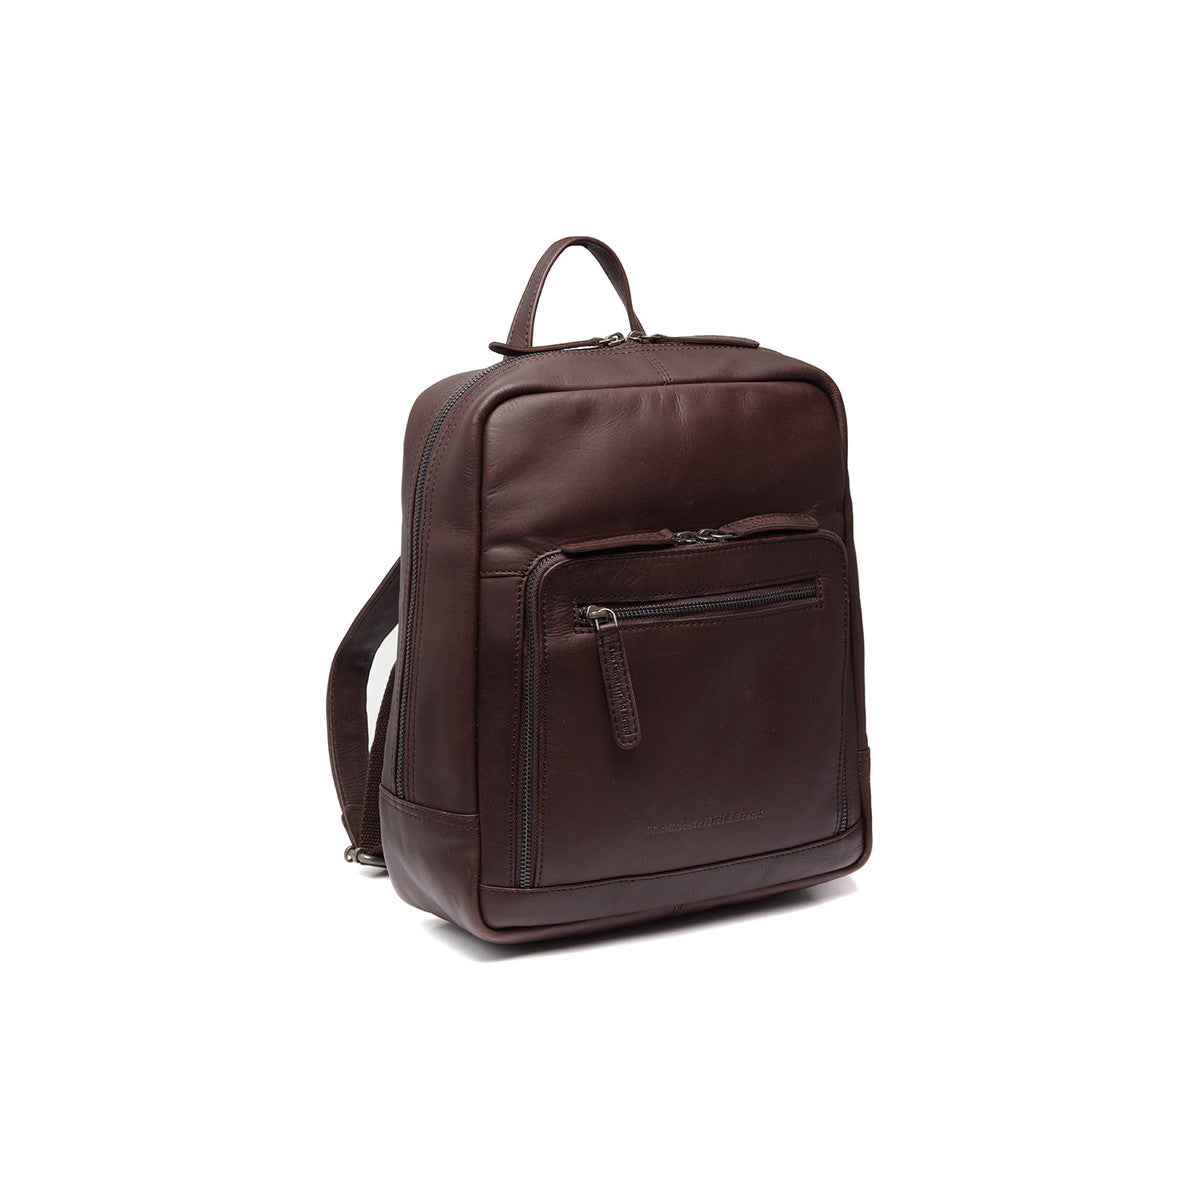 leather-backpack-brown-mykonos.jpg